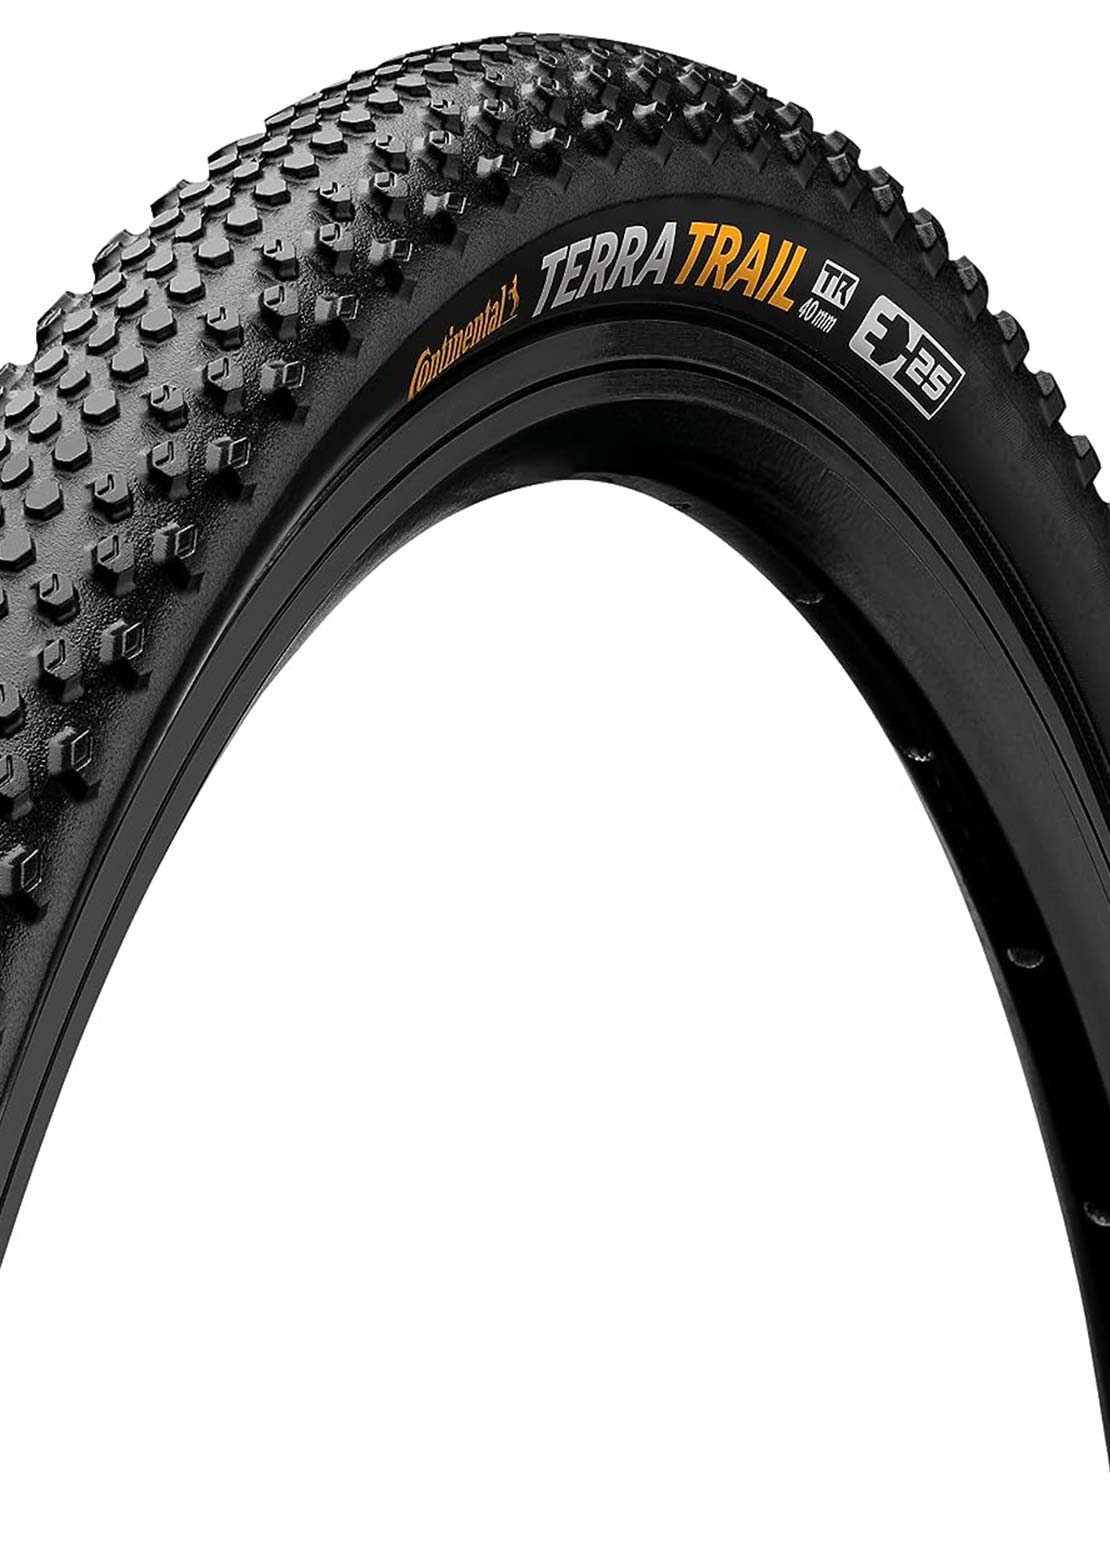 Continental Terra Trail Shieldwall Gravel Bike Tires - 700mm x 35mm